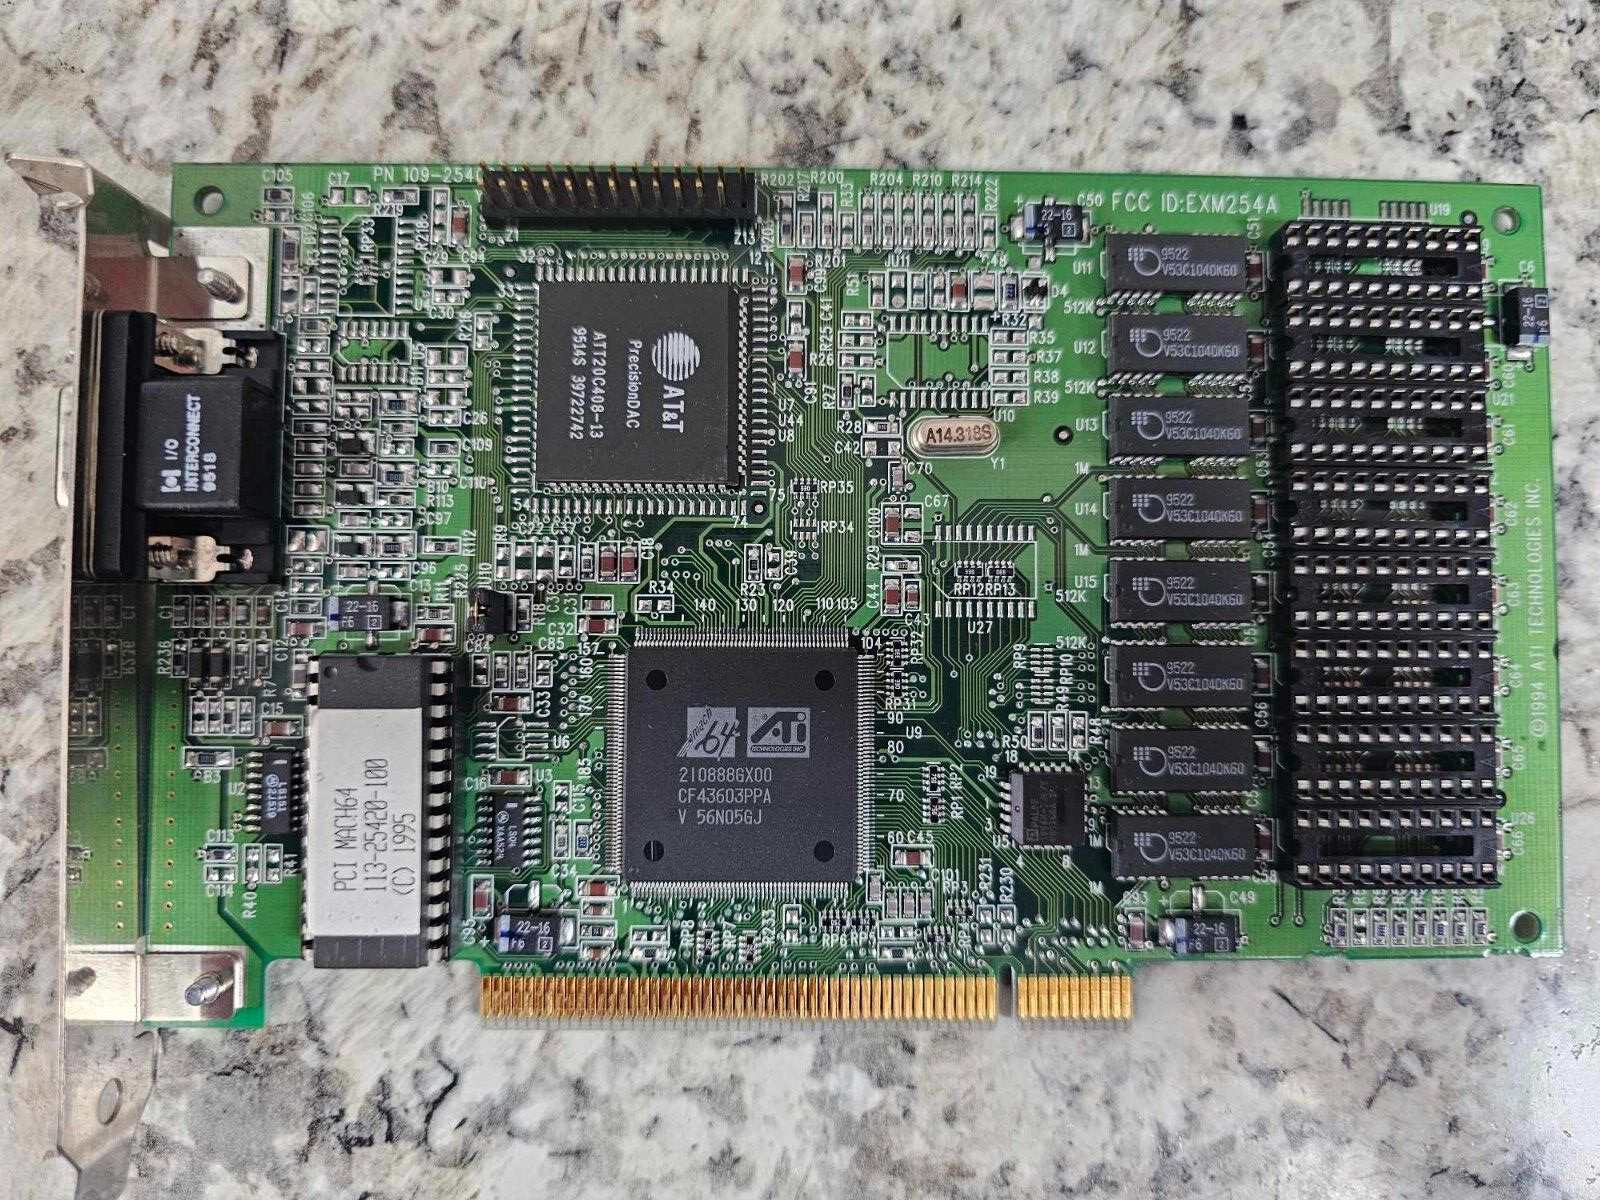 Rare Vintage ATI Mach64 PCI VGA Video Graphics Card AT&T PrecisionDAC EXM254A